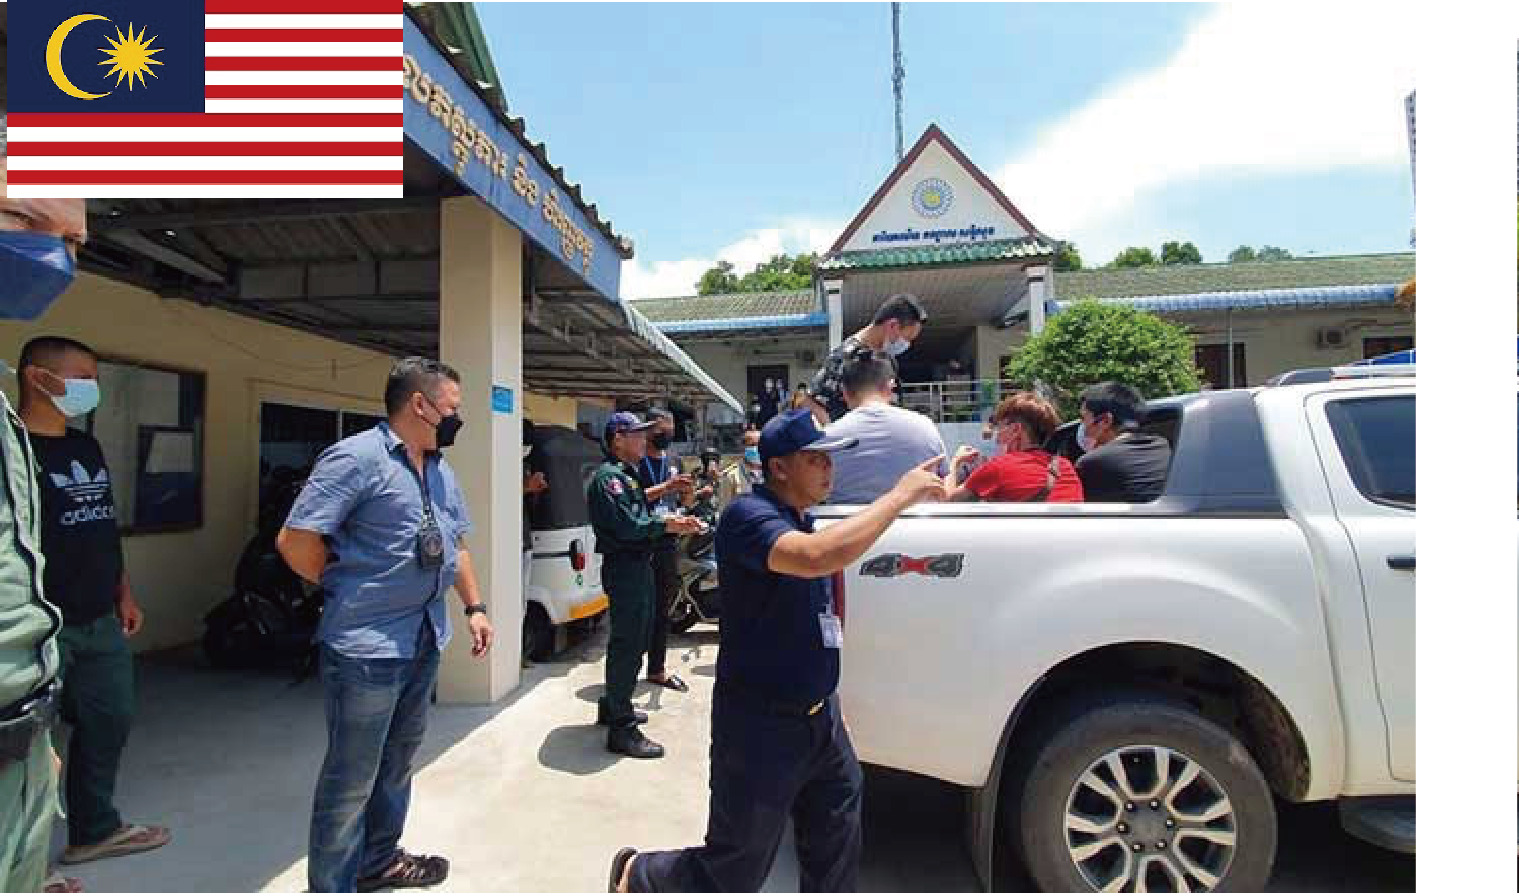 「救出された一部のマレーシア人が再びカンボジア詐欺仕事に」の報道に疑問